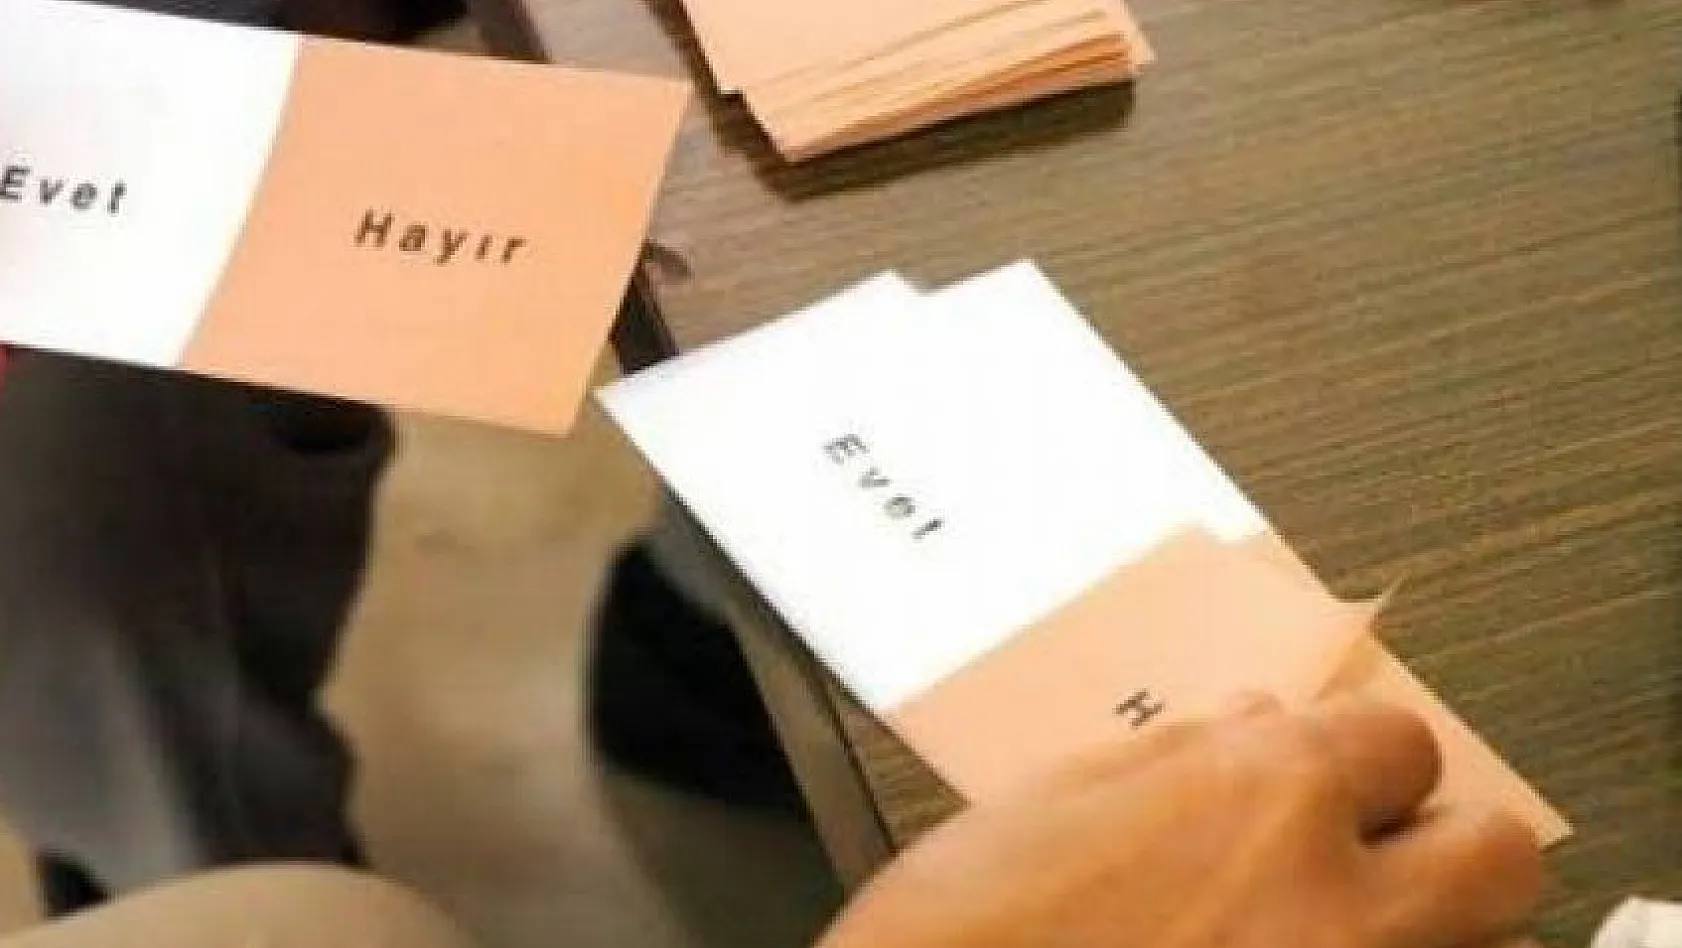 YSK'nın 'mühürsüz oy pusulası' kararının gerekçesi açıklandı